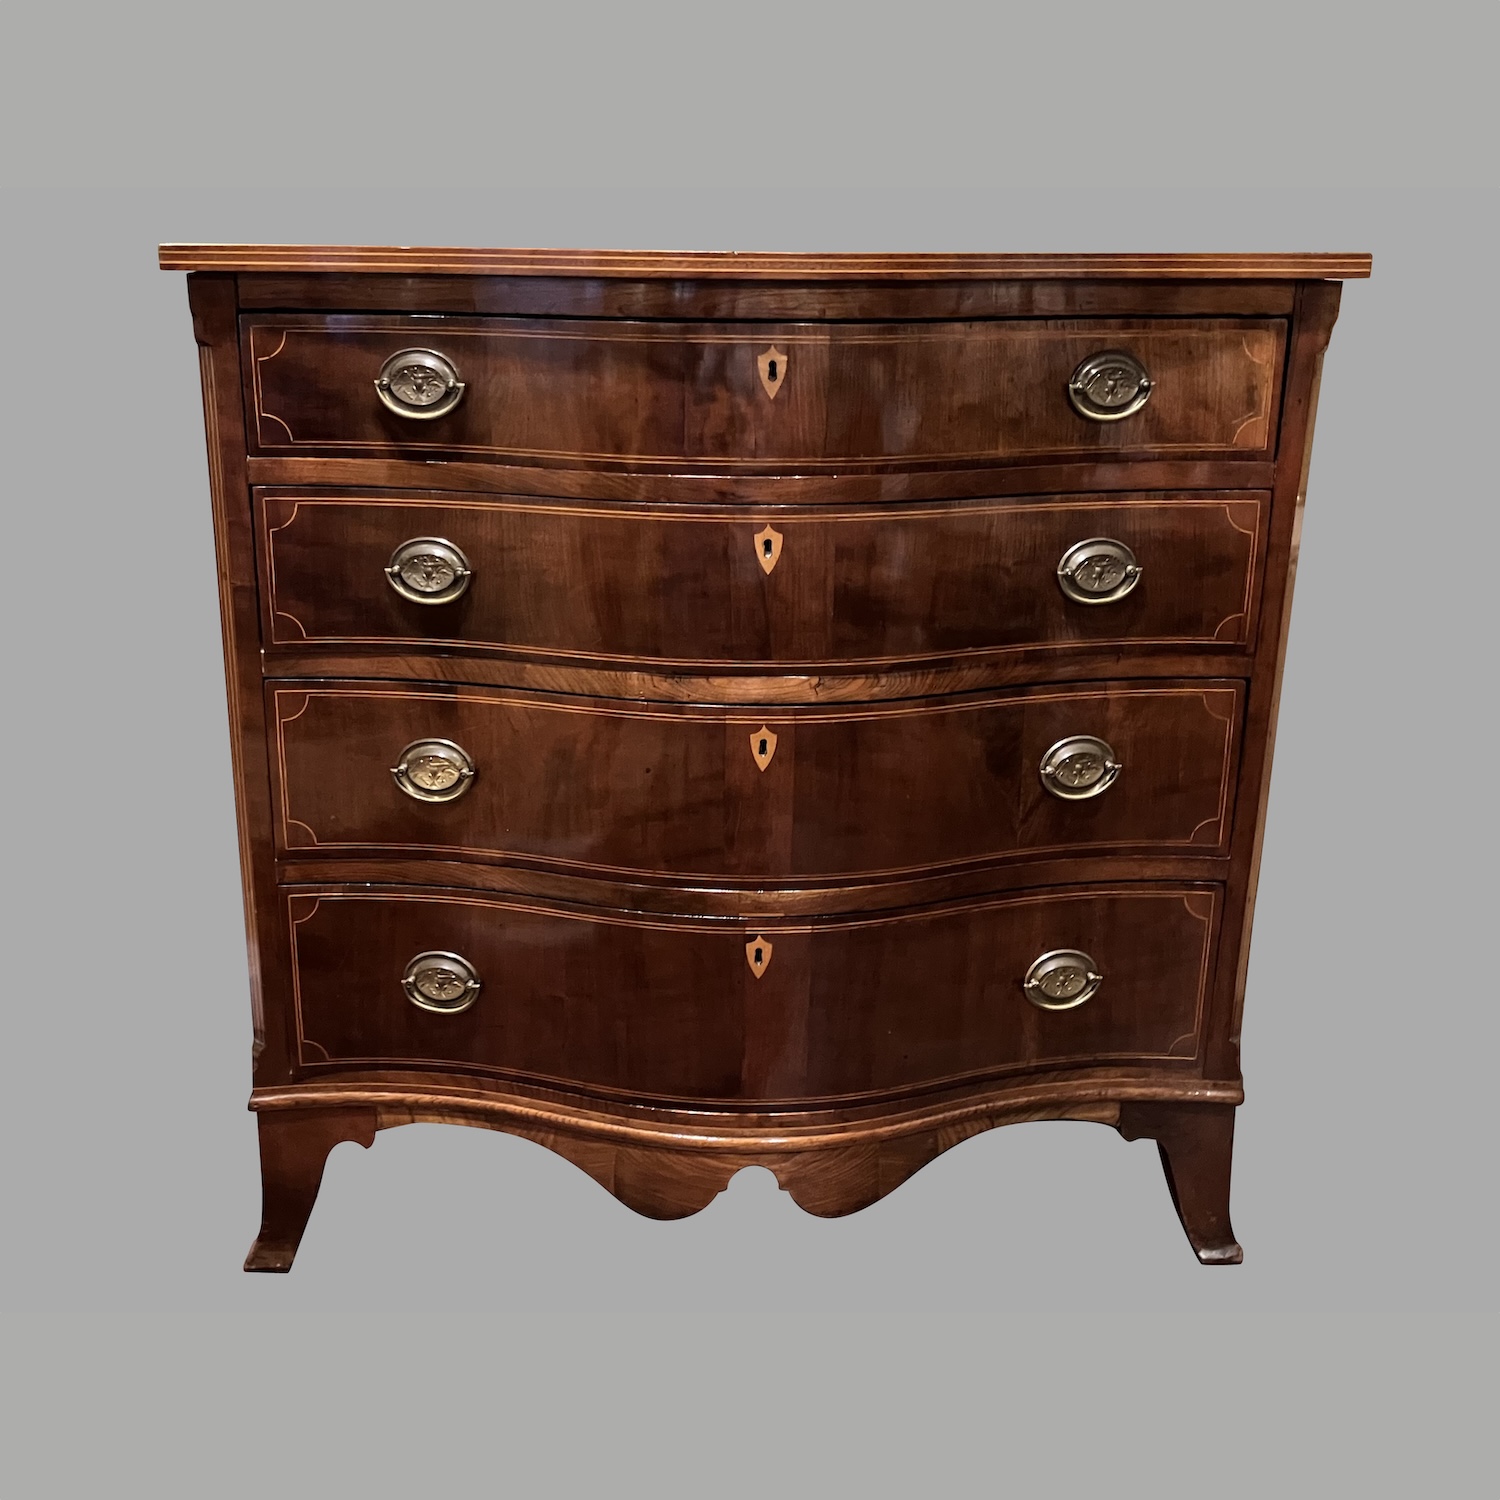 hepplewhite-style-inlaid-mahogany-serpentine-chest-drawers-c723-24